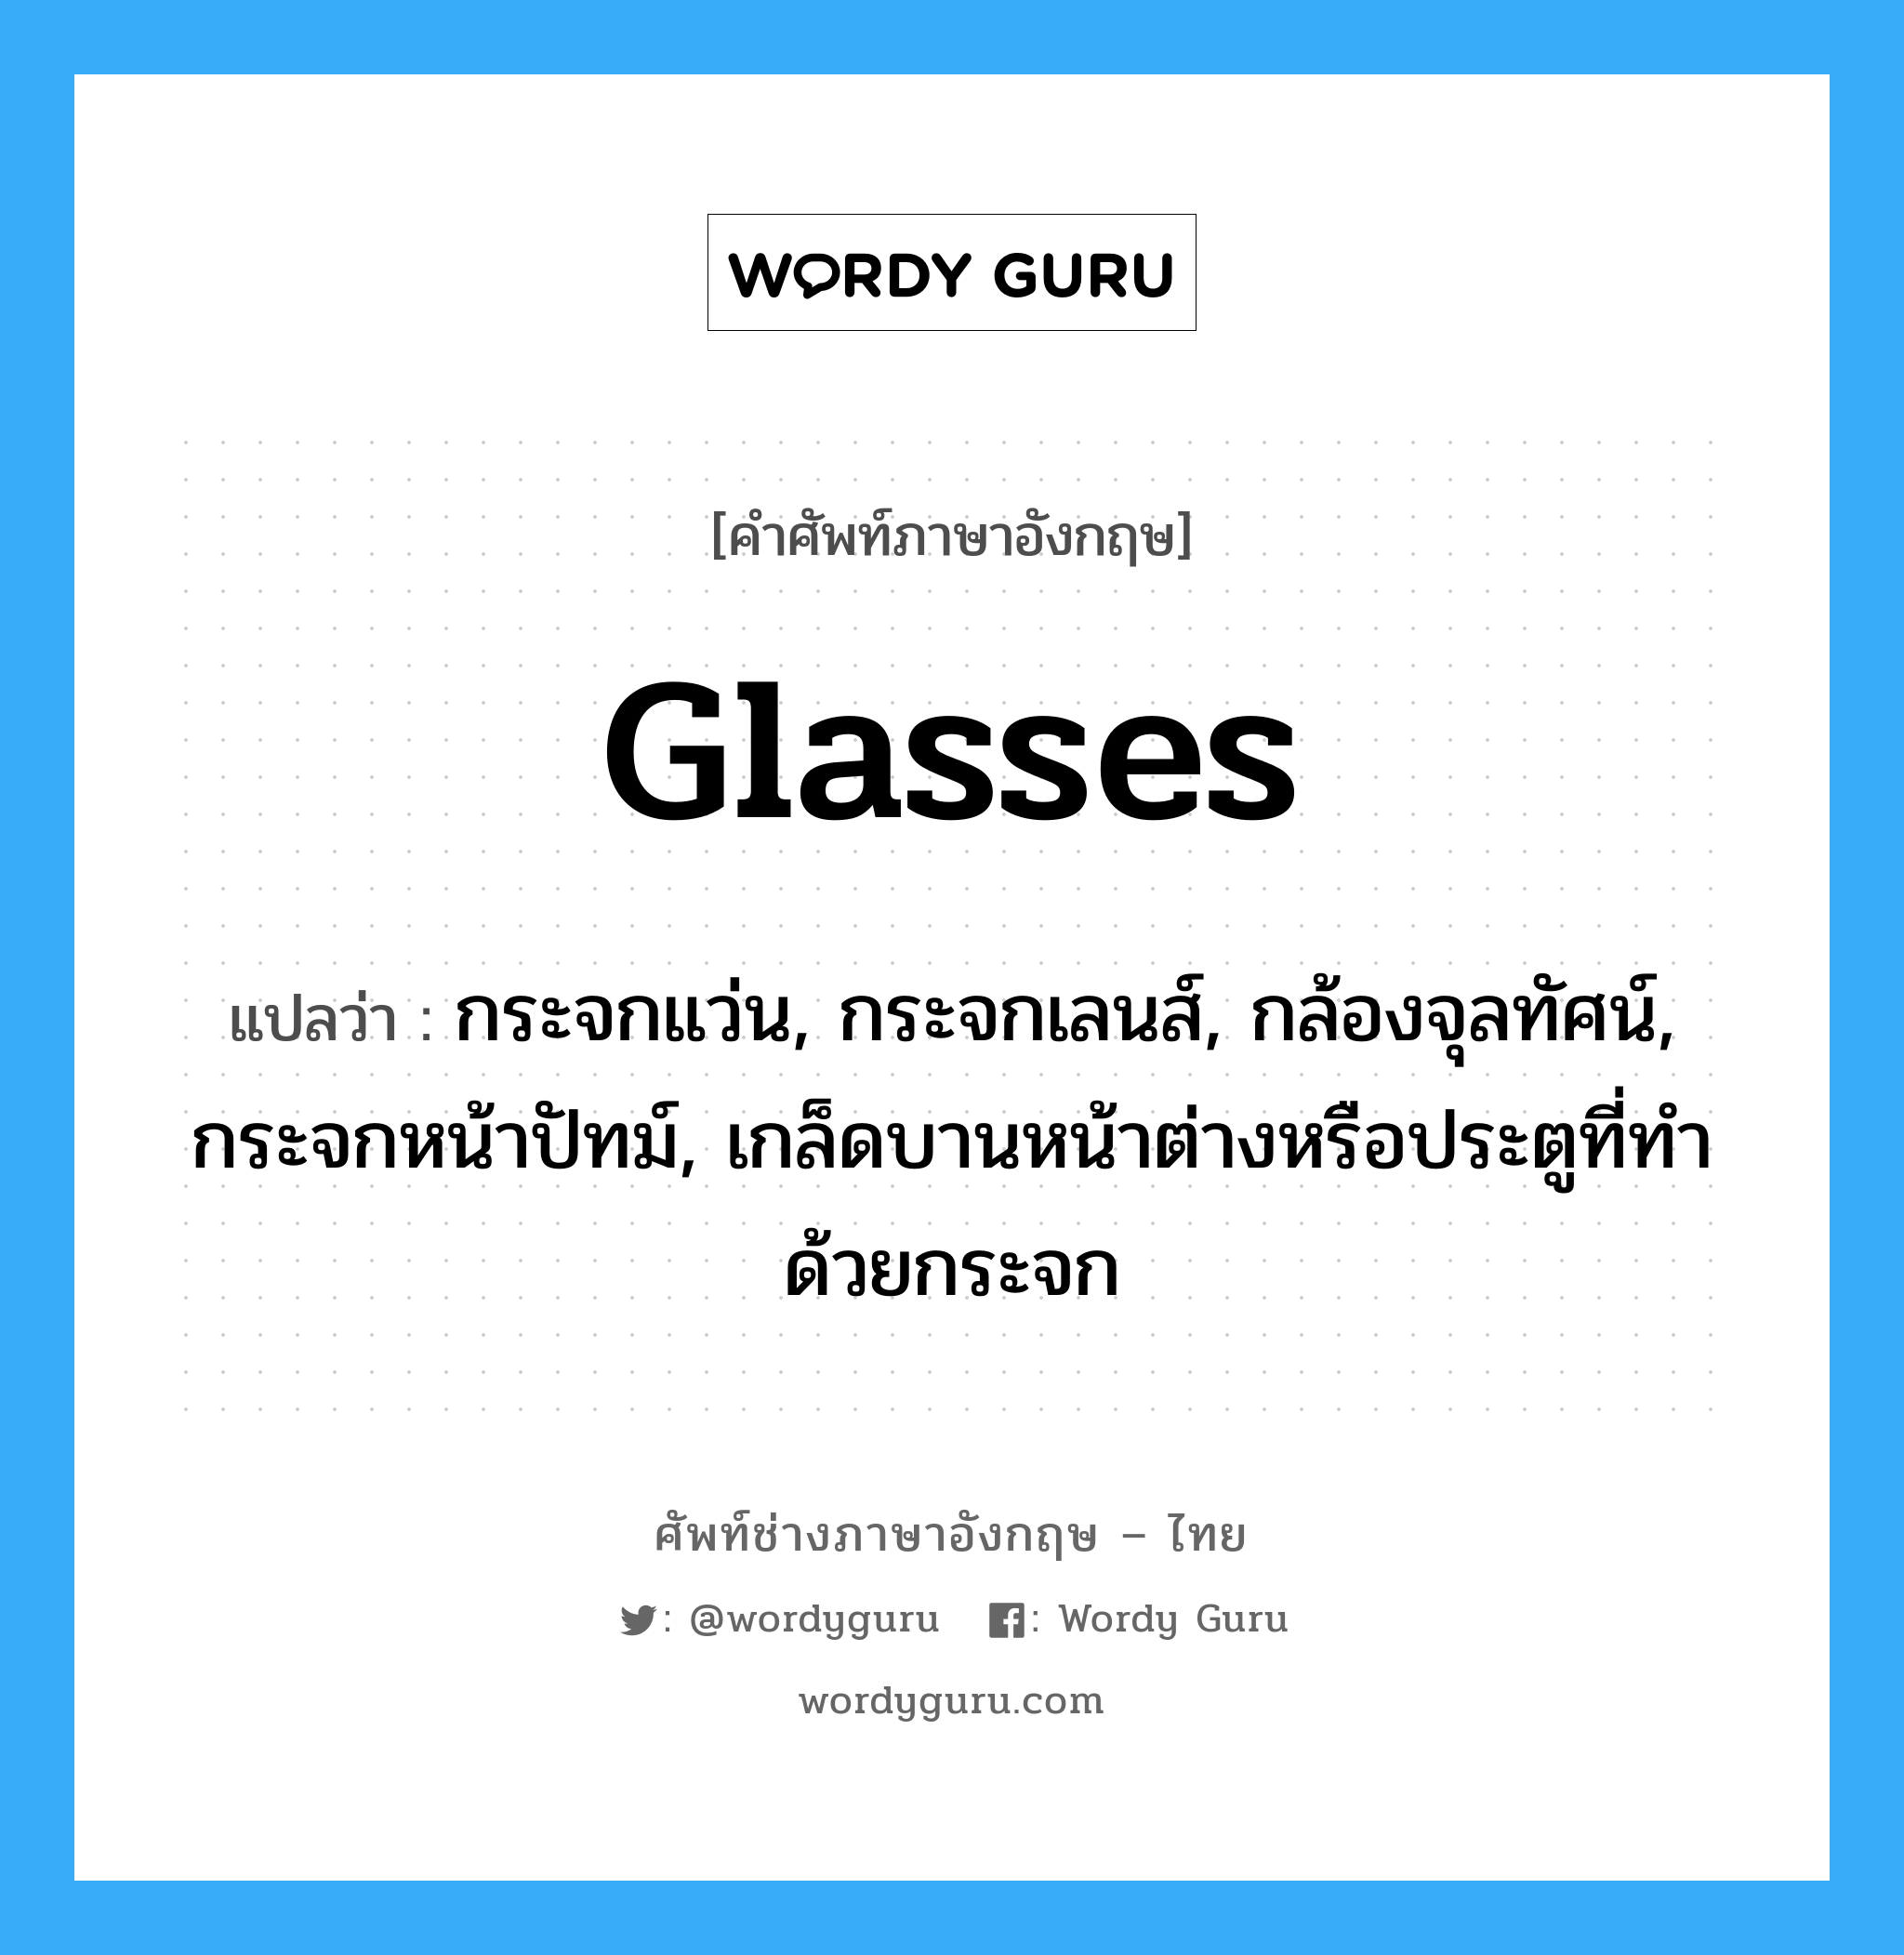 glasses แปลว่า?, คำศัพท์ช่างภาษาอังกฤษ - ไทย glasses คำศัพท์ภาษาอังกฤษ glasses แปลว่า กระจกแว่น, กระจกเลนส์, กล้องจุลทัศน์, กระจกหน้าปัทม์, เกล็ดบานหน้าต่างหรือประตูที่ทำด้วยกระจก